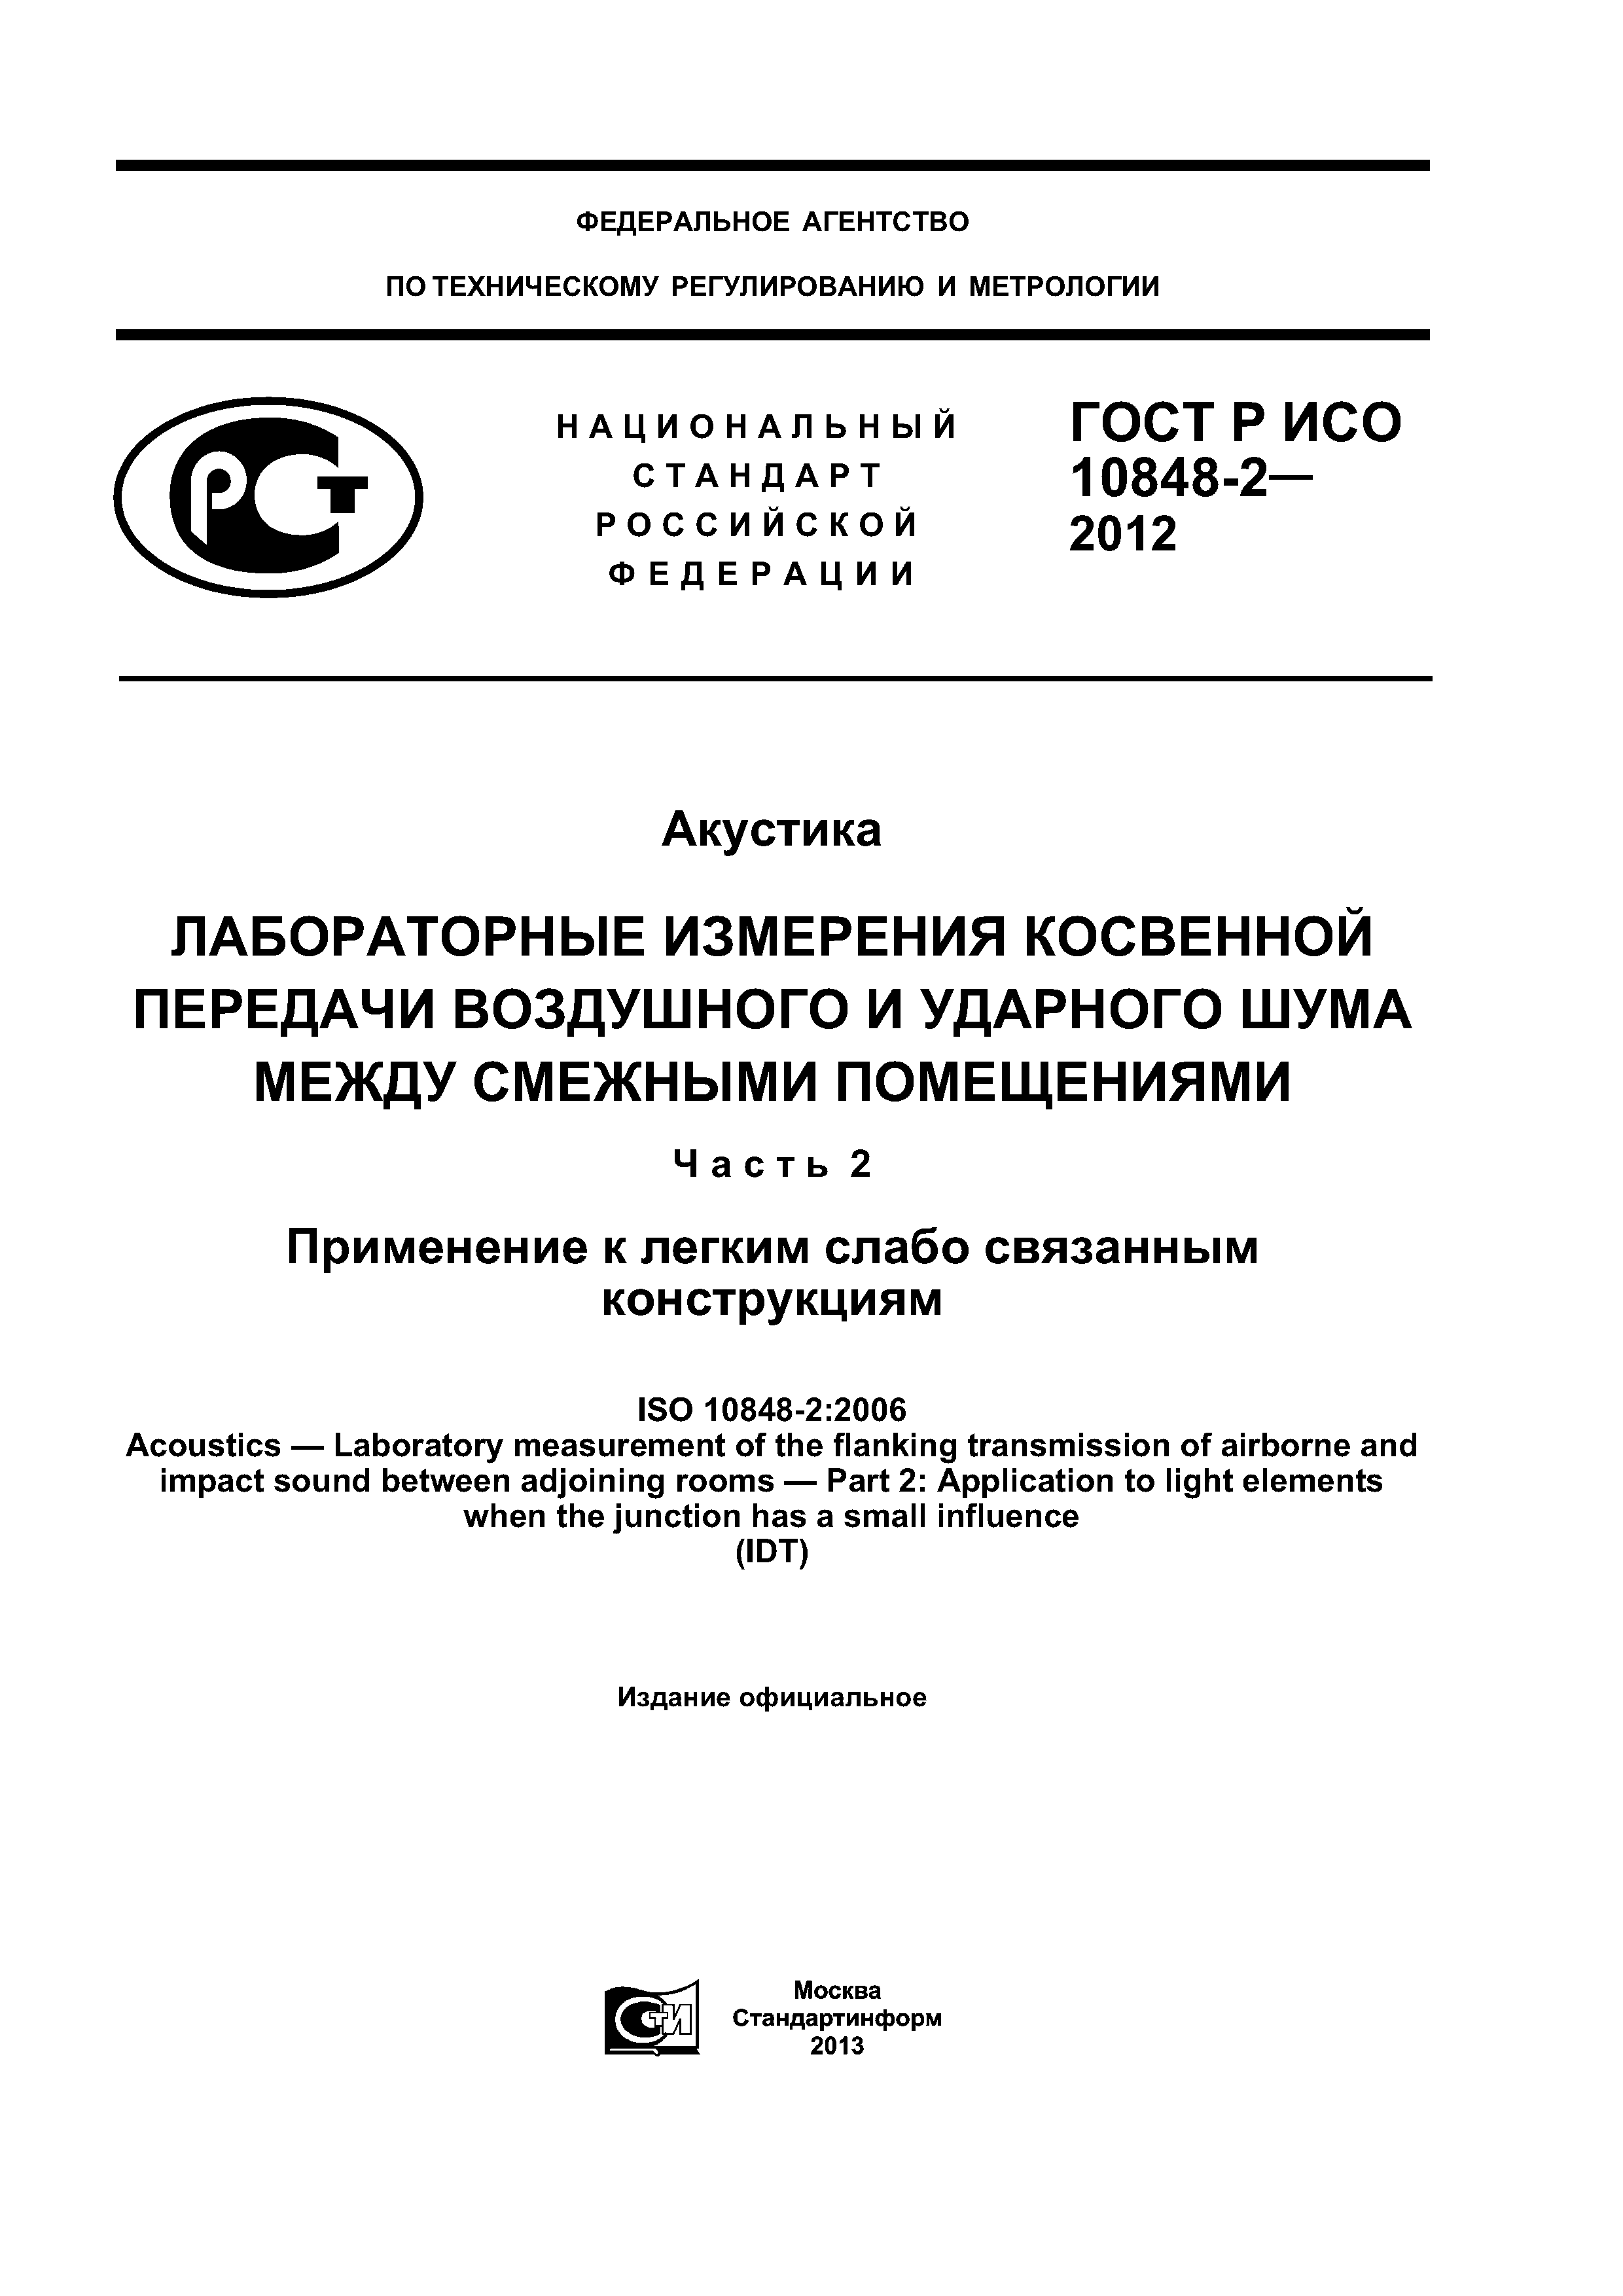 ГОСТ Р ИСО 10848-2-2012